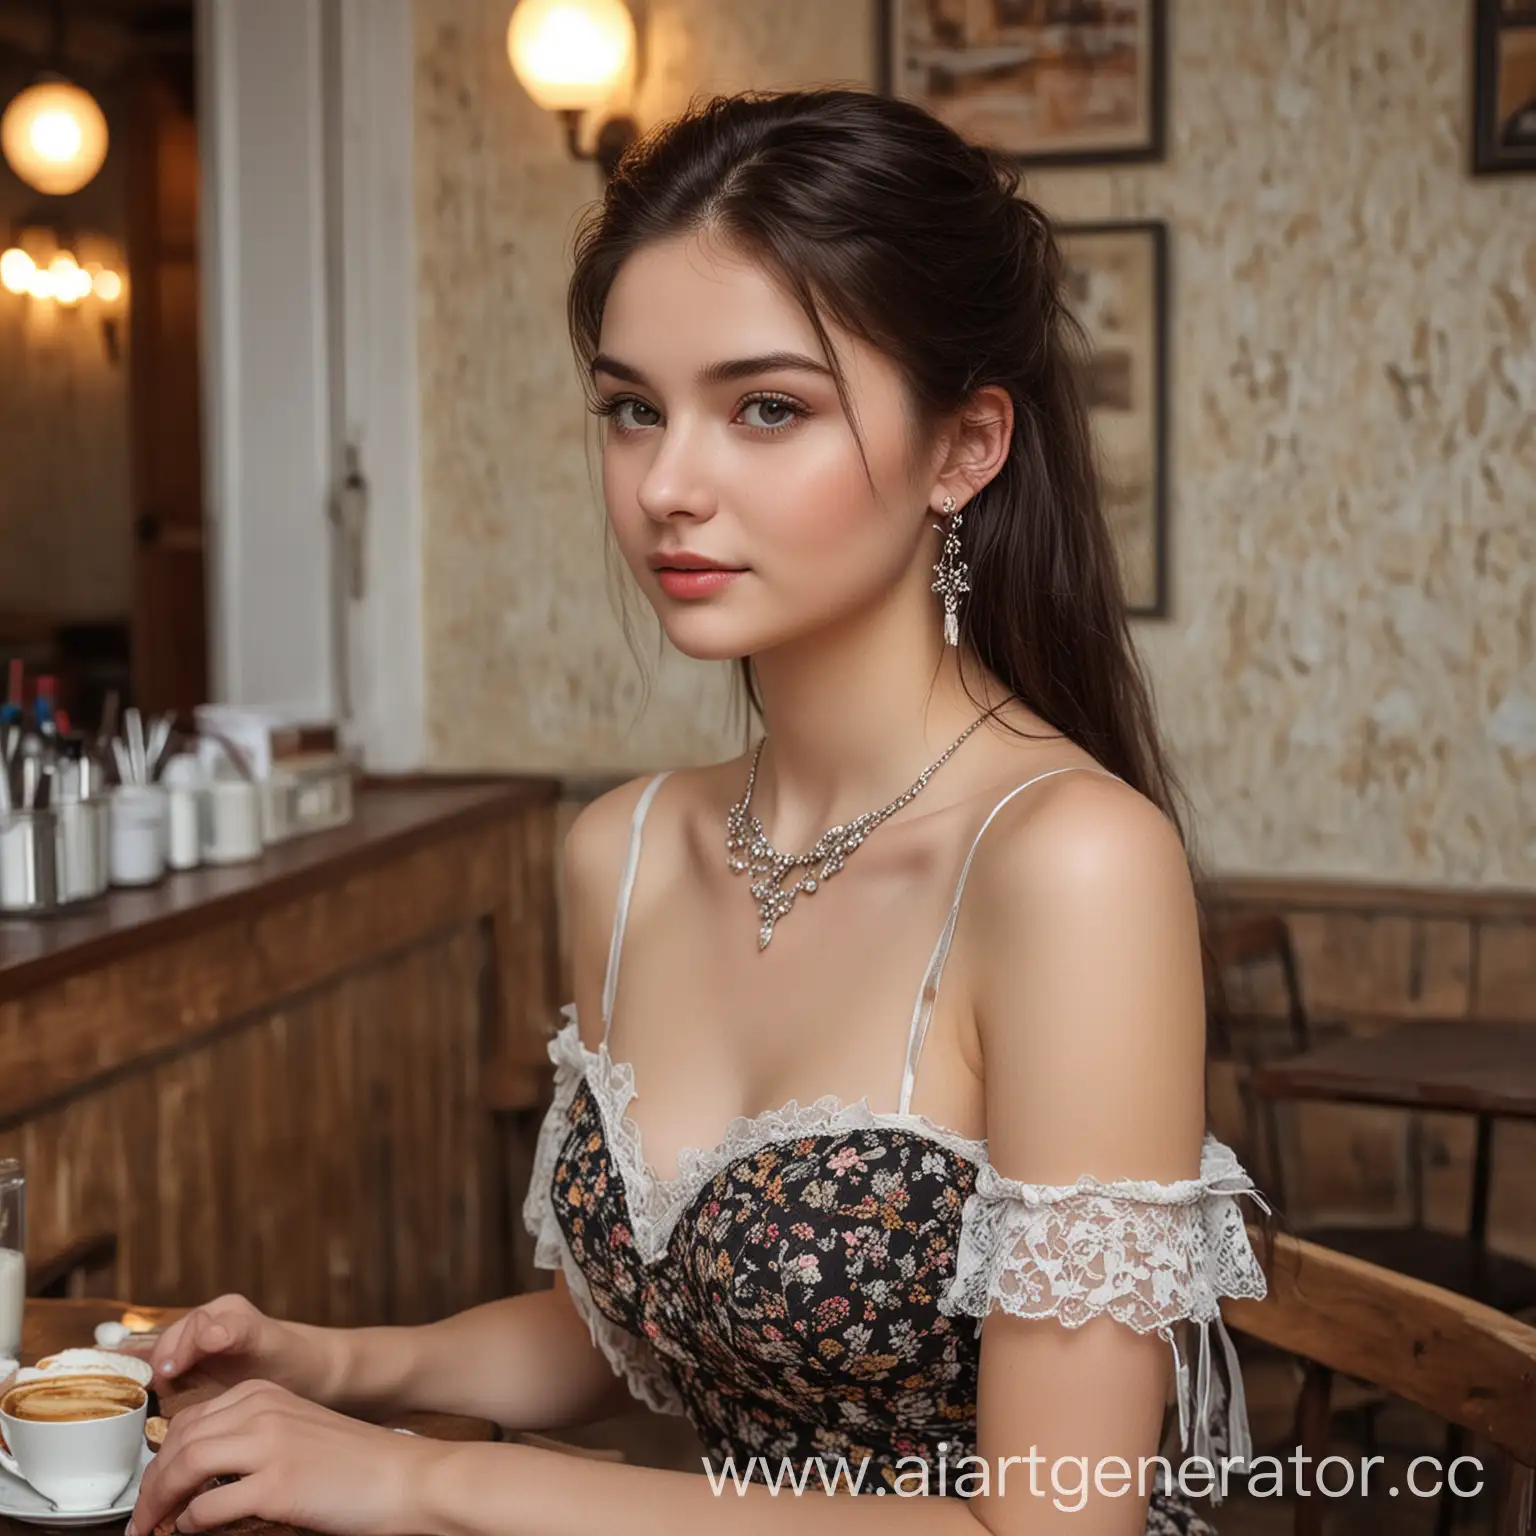 девушка 18 лет, русская, красивая, темные волосы, светлая кожа,  сережки, реалистично, в кафе, грудь второго размера, плате, модельная внешность